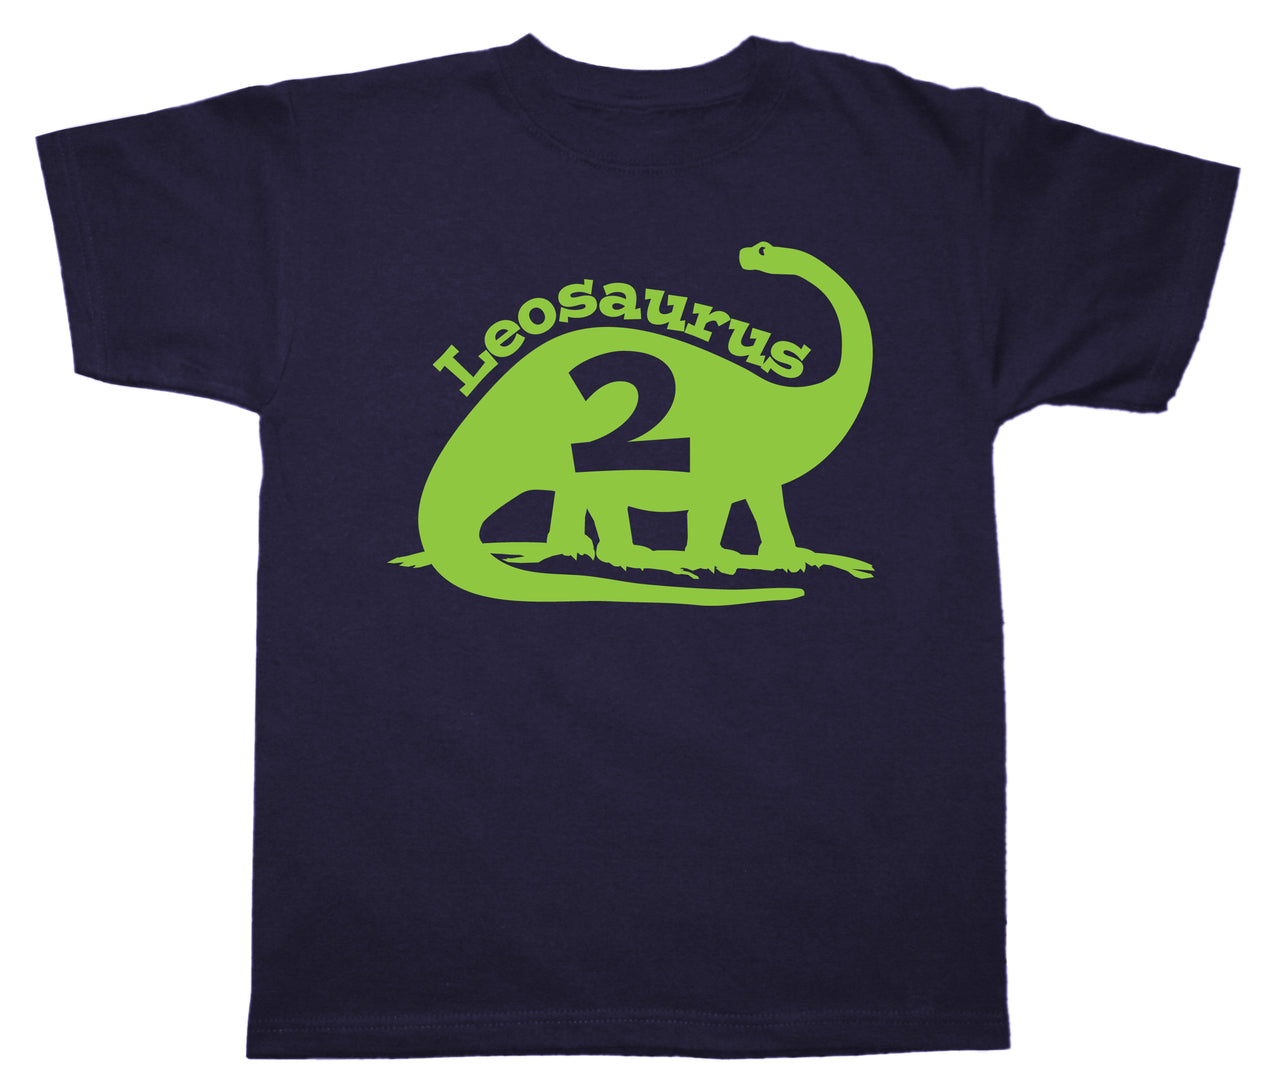 Brontosaurus birthday shirt